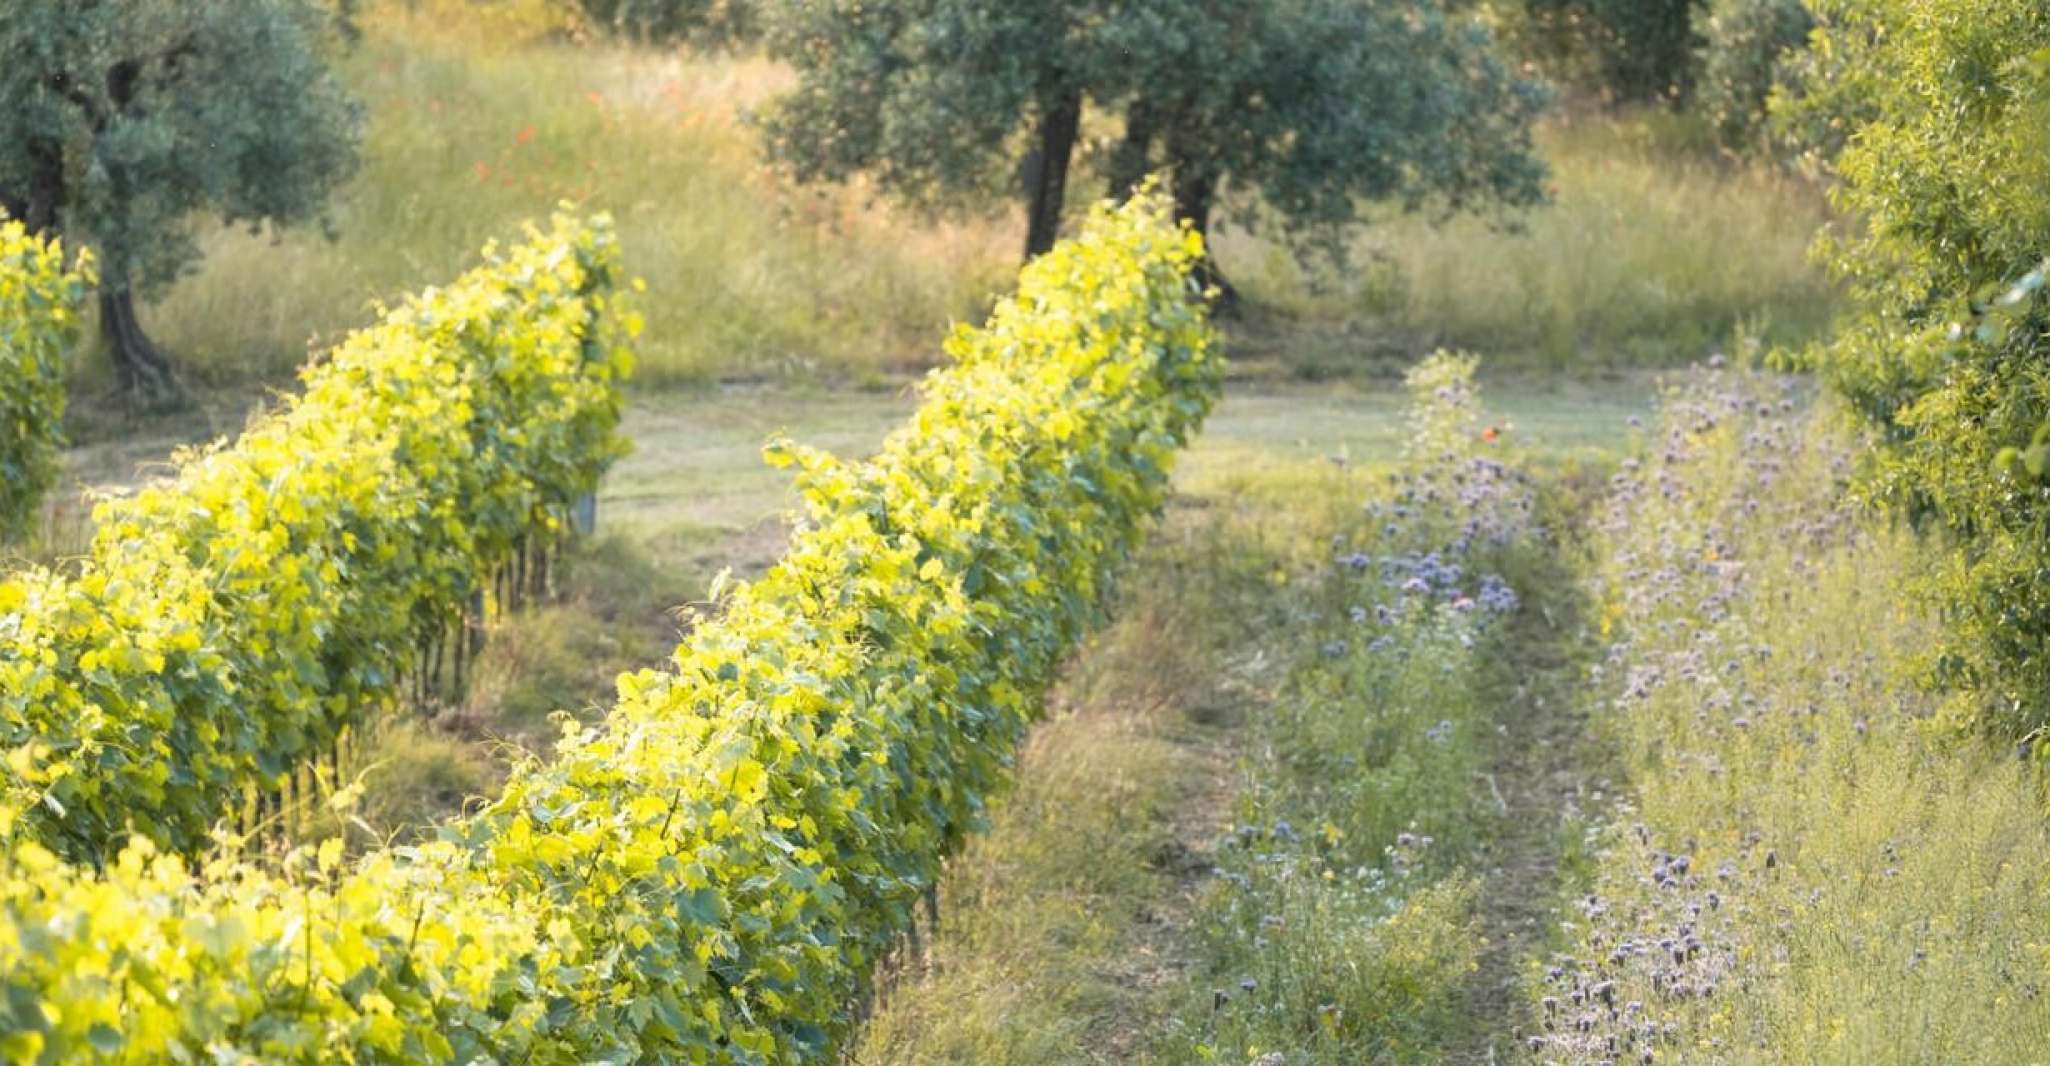 San Gimignano, Wine and Food Tasting on an Organic farm - Housity